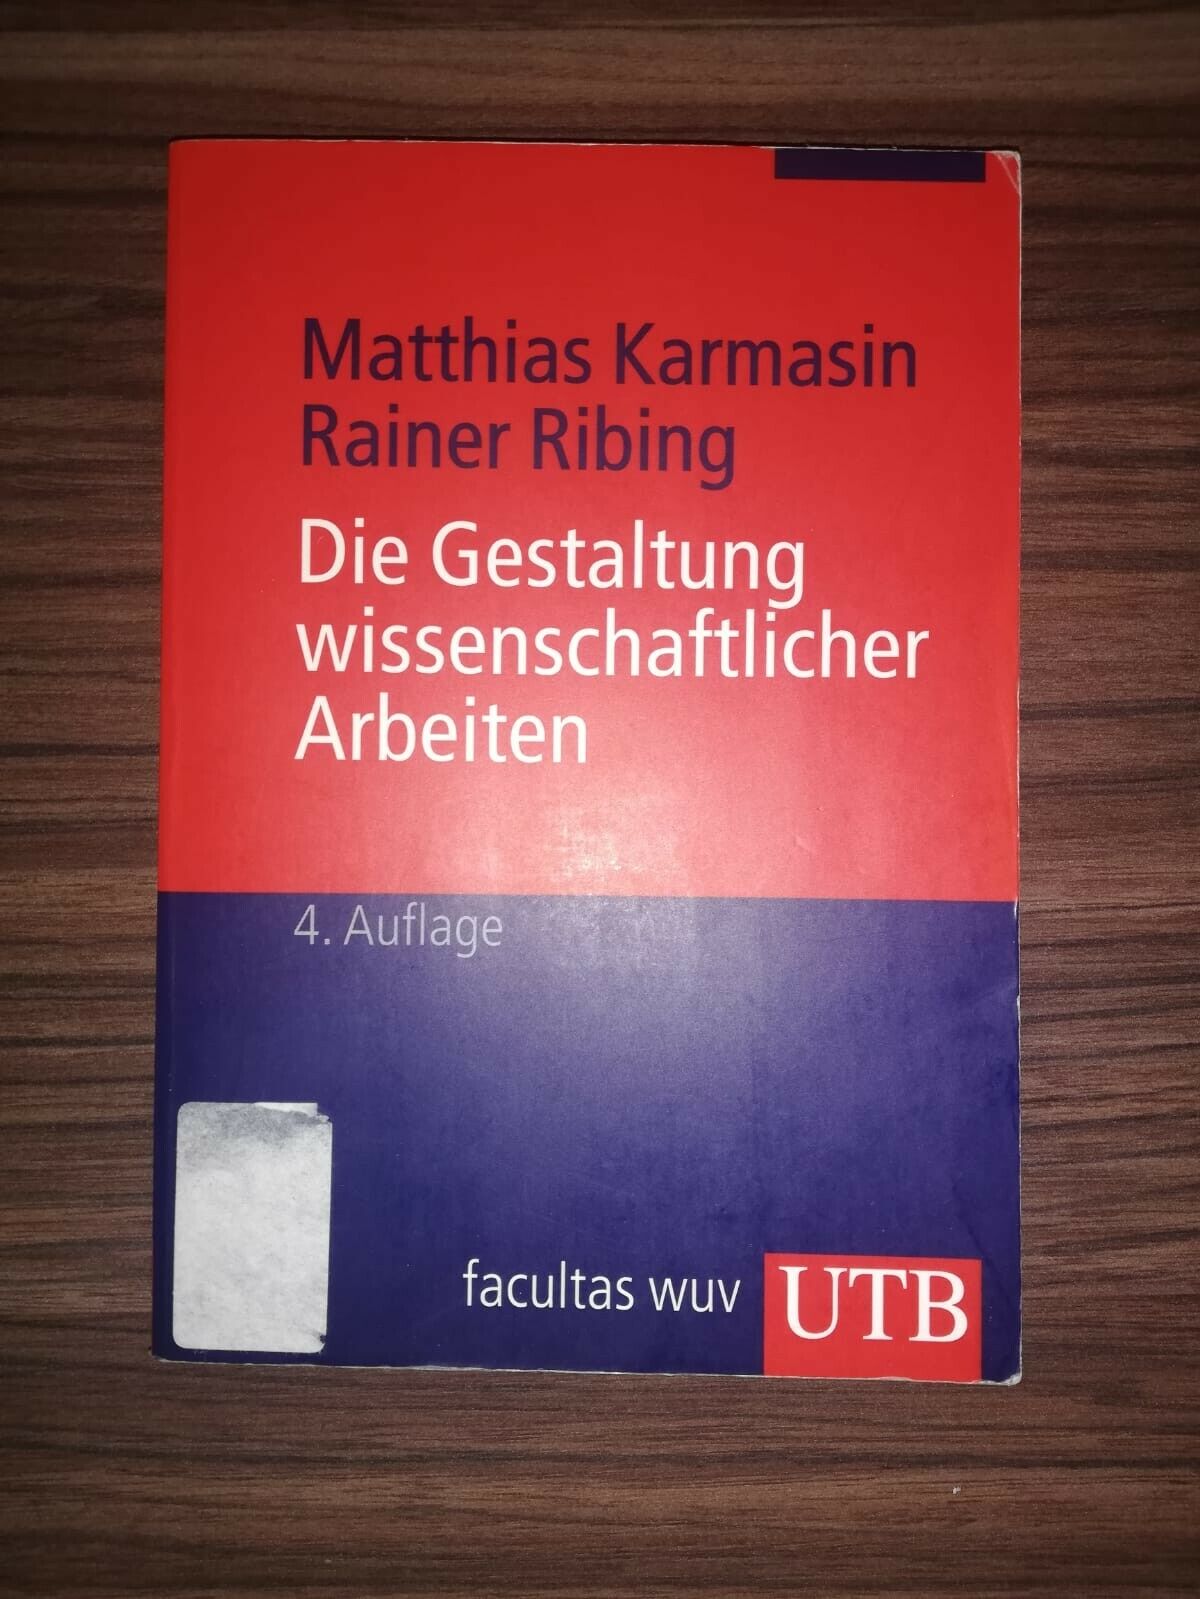 Die Gestaltung wissenschaftl. Arbeiten;Matthias Karmasin,ISBN: 978-3-8252-2774-6 - Matthias Karmasin